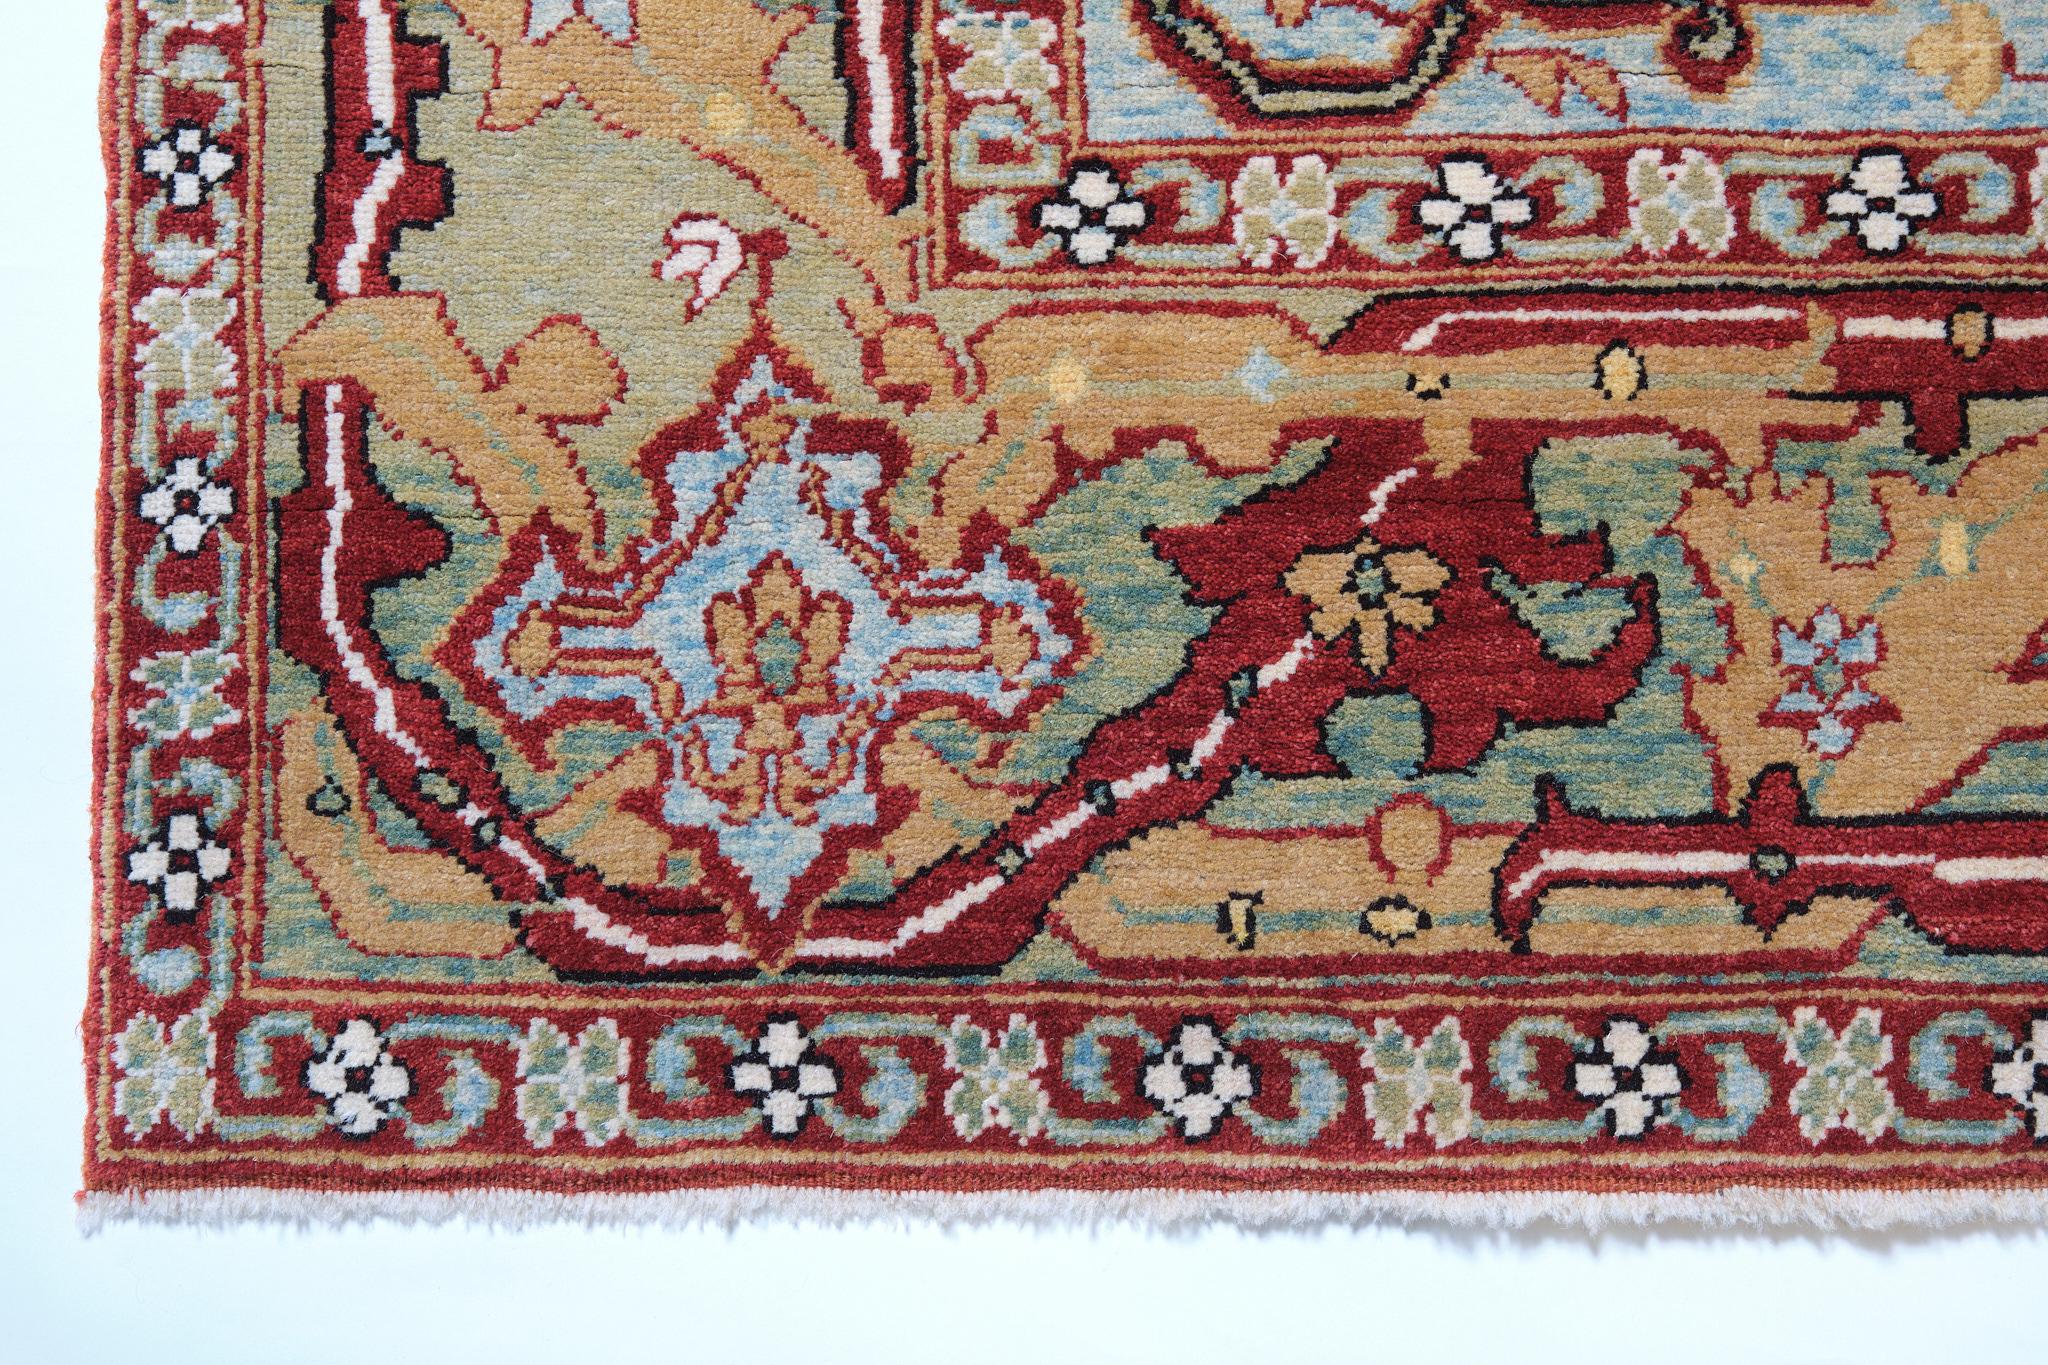 Die Quelle des Teppichs stammt aus dem Buch Antique Rugs of Kurdistan A Historical Legacy of Woven Art, James D. Burns, 2002 nr.33. Dies ist ein feiner kurdischer Werkstatt-Teppich mit Split-Palmette- und Dreiblatt-Arabesken-Muster aus der Mitte des